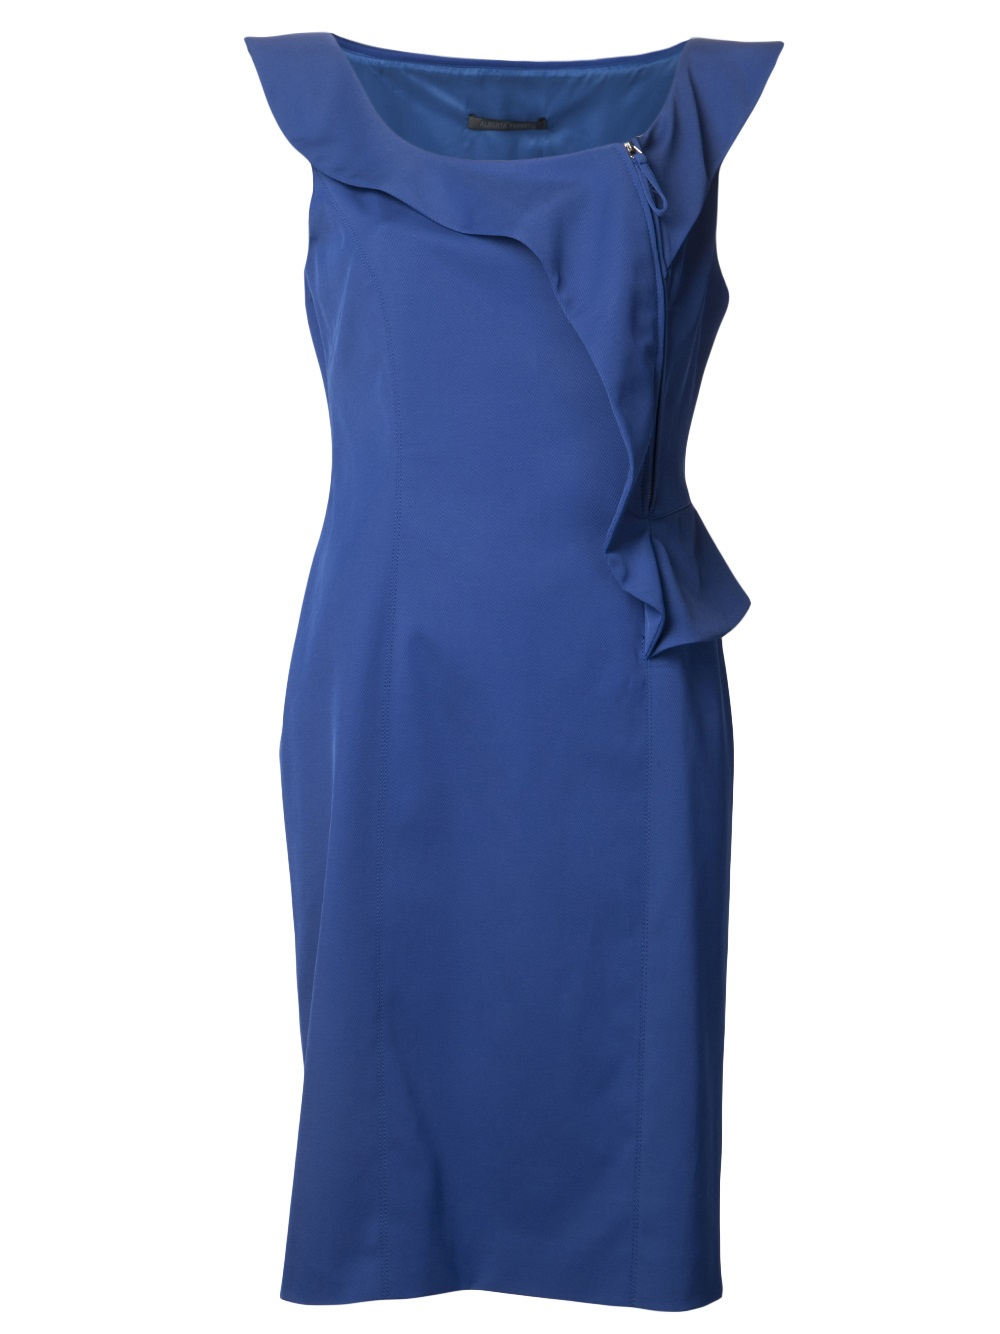 Lyst - Alberta Ferretti Sleeveless Open Neck Dress in Blue